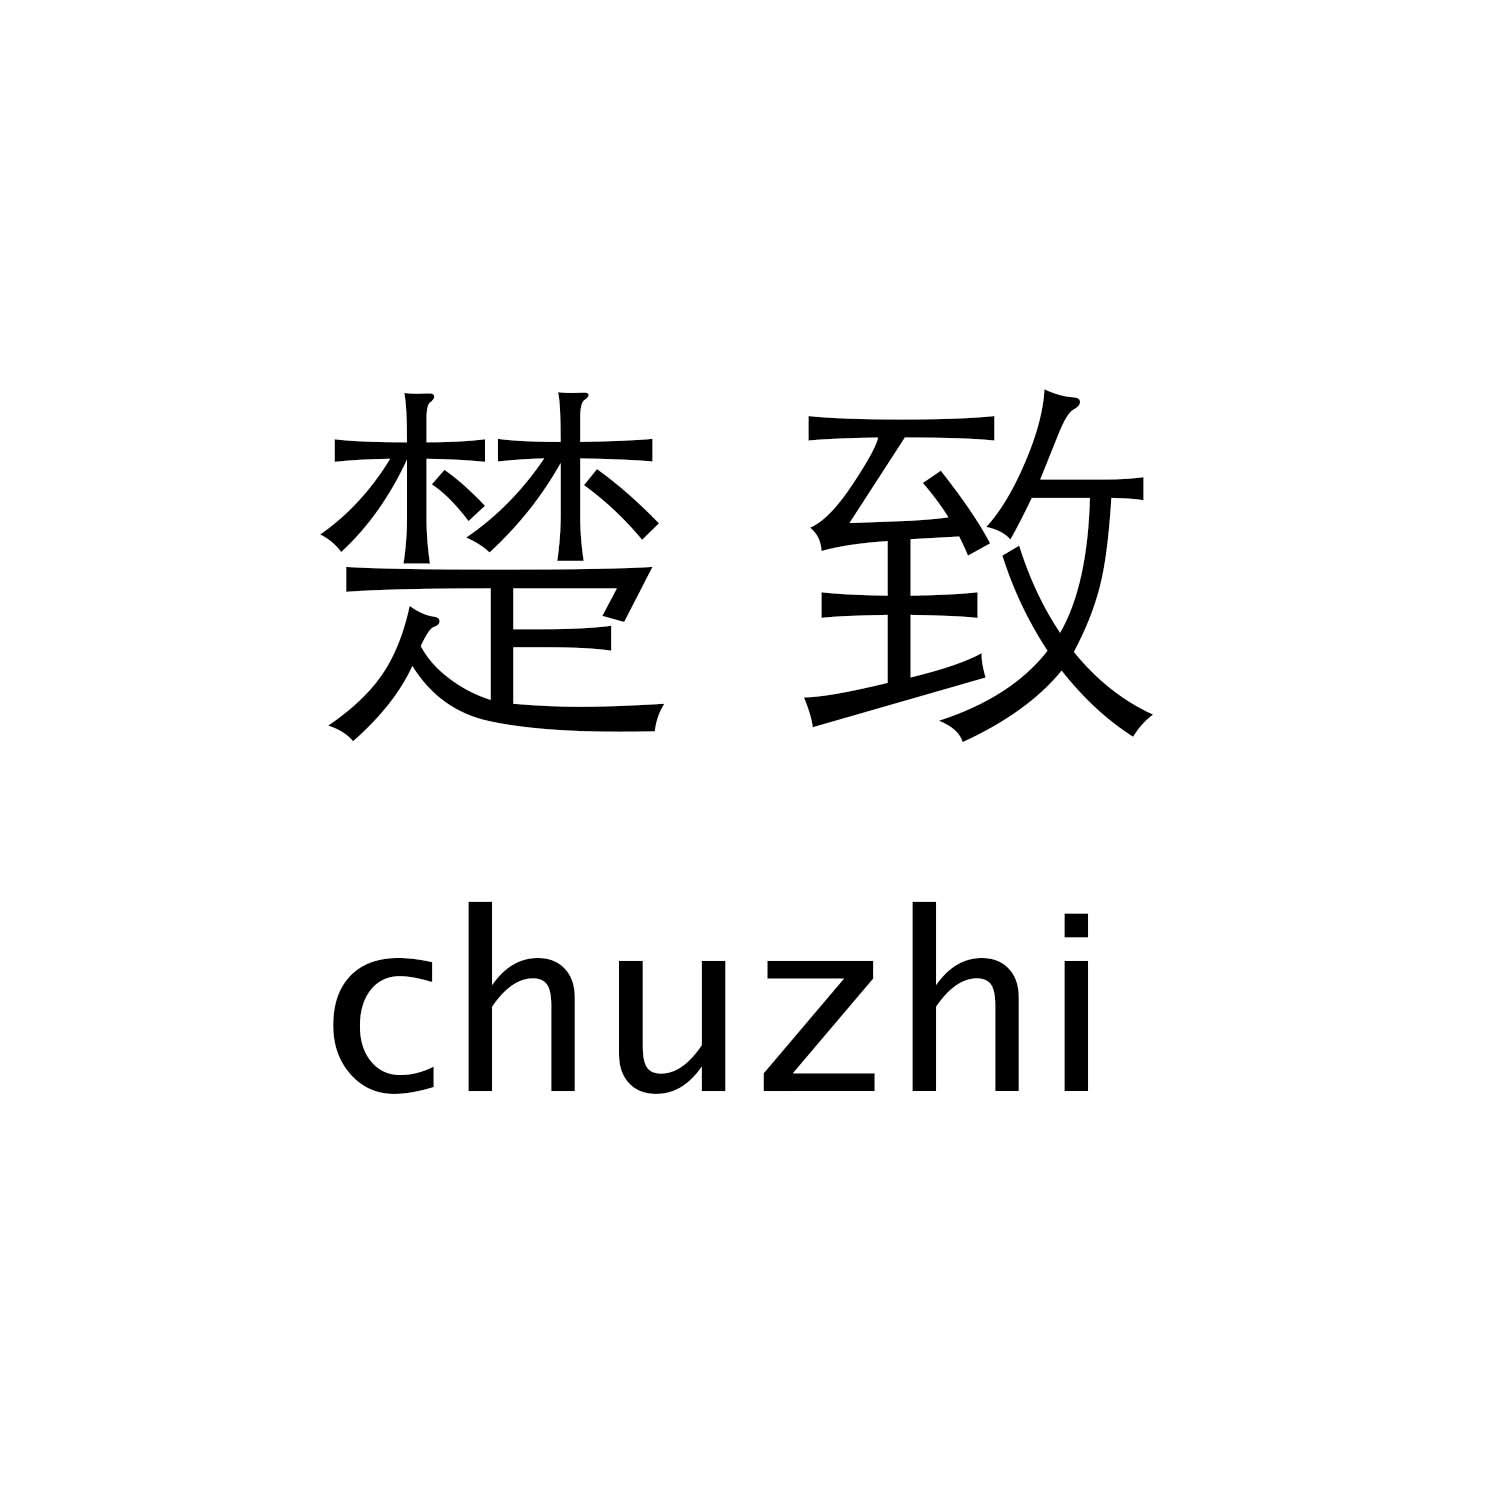 楚致chuzhi